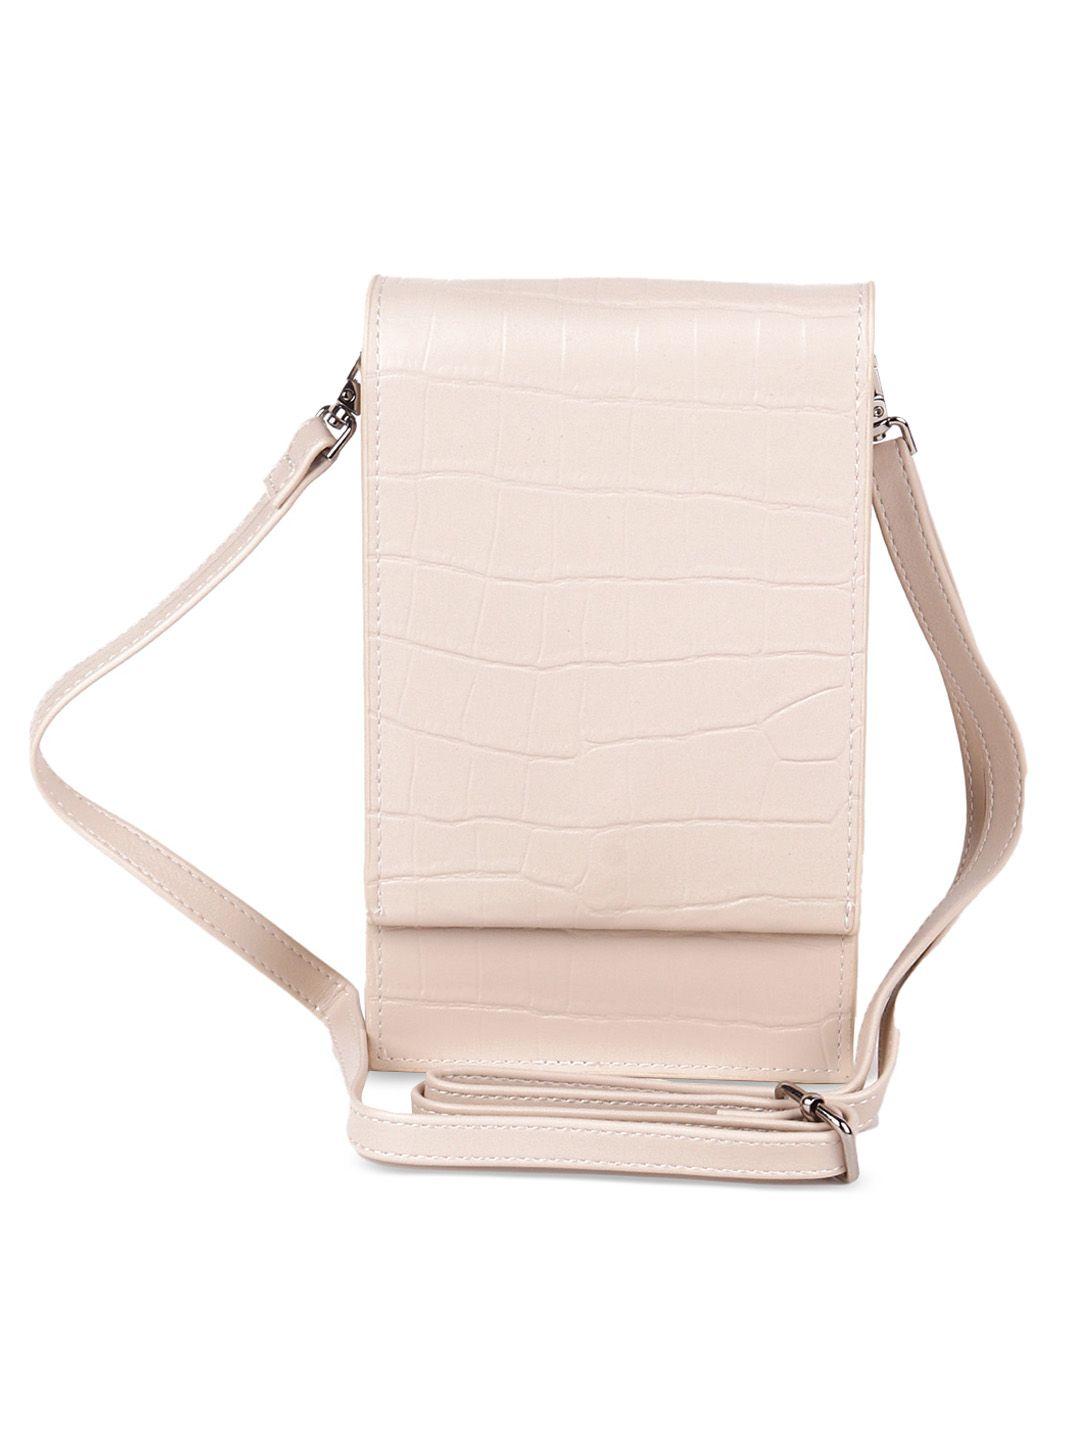 odette pink leather shopper sling bag